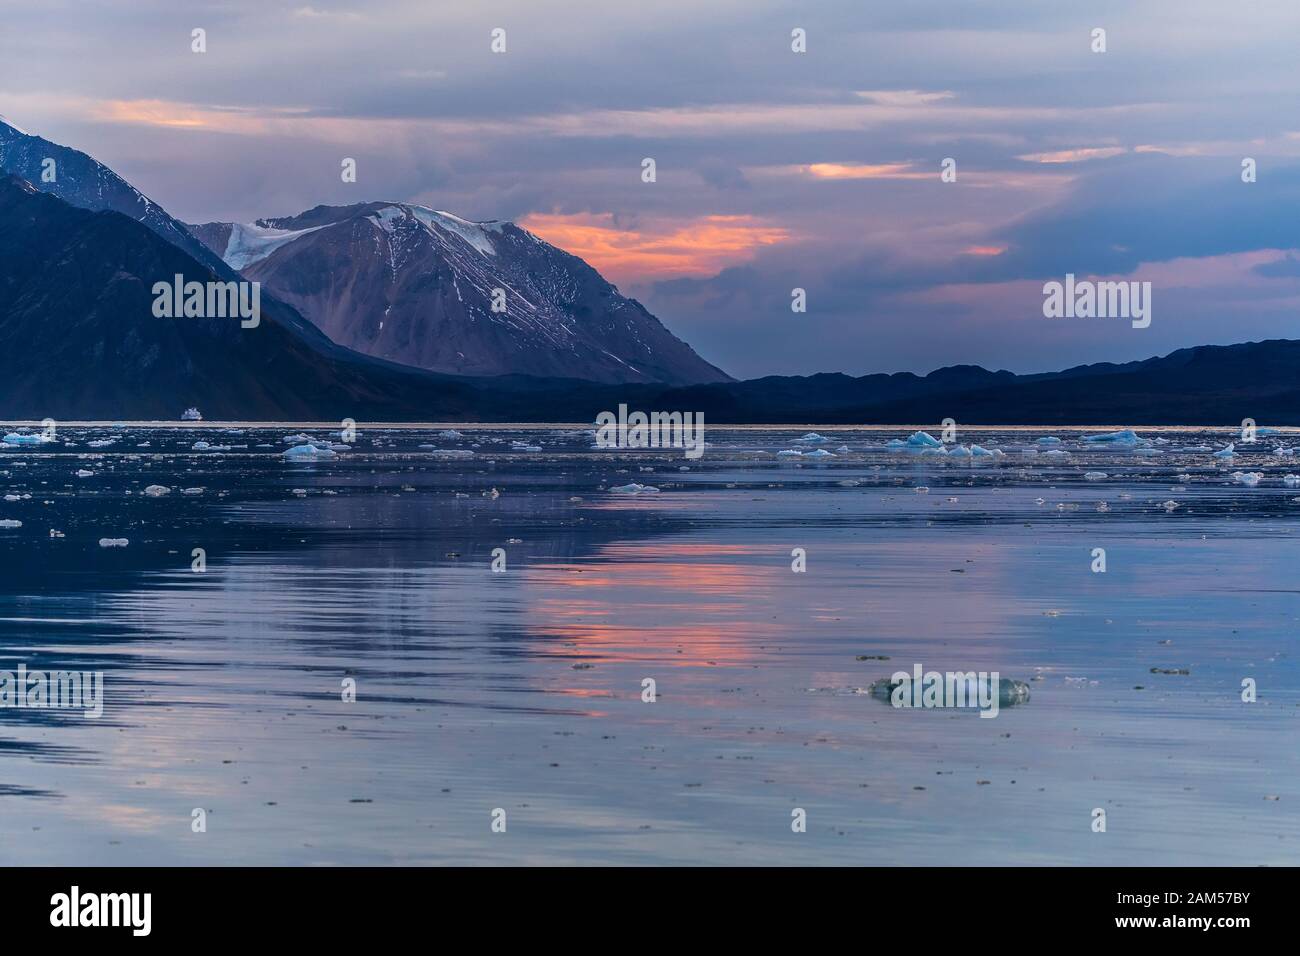 Abendstimmung in der Arktis - Lichtreflexion des farbigen Himmels Stockfoto